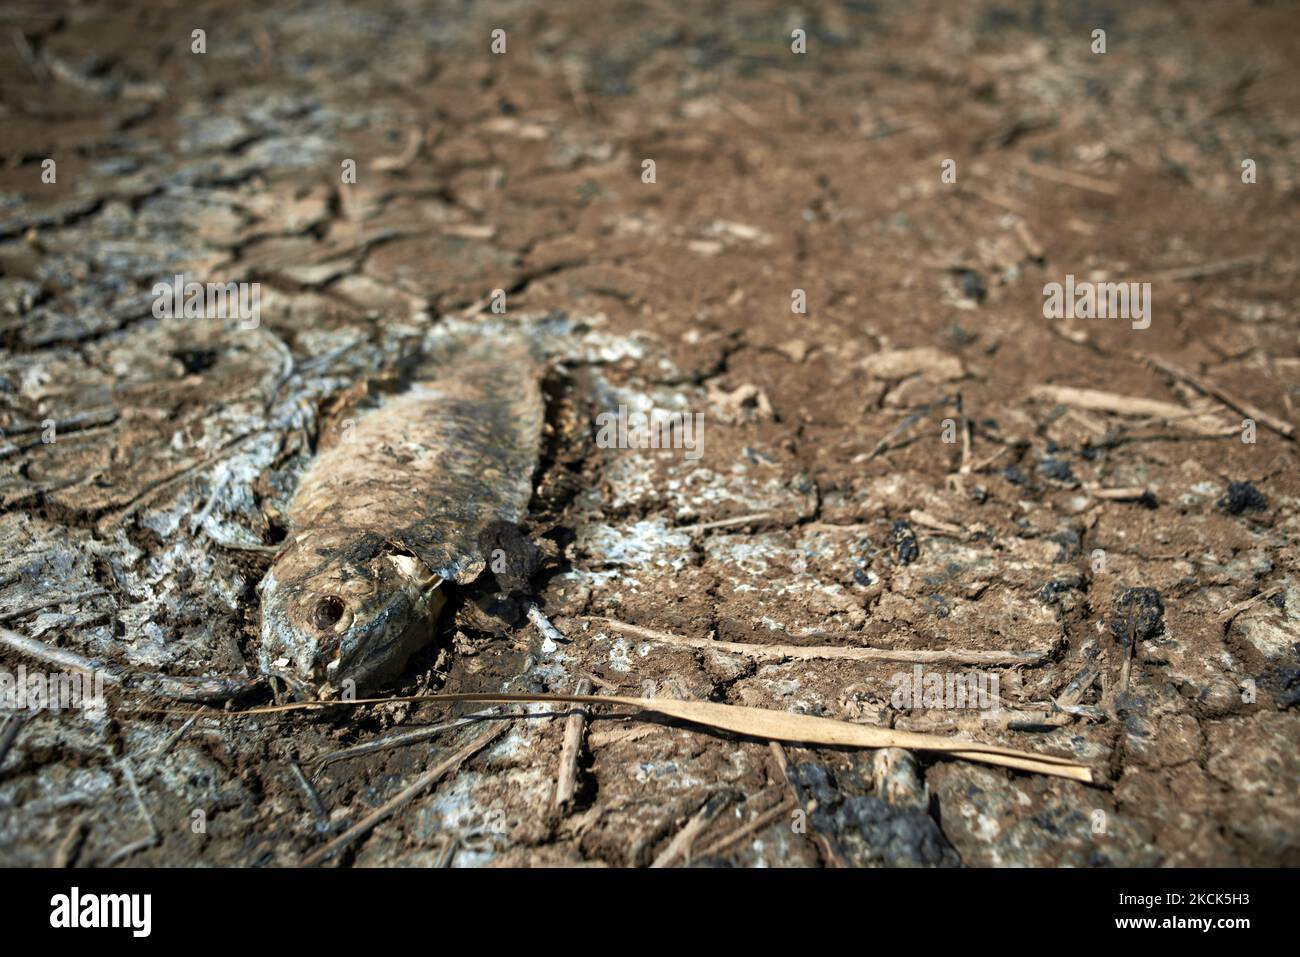 Auf dem Schilfbett des Sumpfes wird ein toter Karpfen getrocknet. Der Sumpf von Capestang in den Departements Herault und Aude trocknet aus, da sengende Temperaturen und fehlender Regen es hart getroffen haben. Das Sumpfgebiet umfasst eine Fläche von 1.374 ha (13,74 Quadratkilometer). Der Teich ist als Natura-2000-Zone (Netz von Naturschutzgebieten auf dem Gebiet der Europäischen Union) und in einem ZPS (Sonderschutzgebiet für Wildvögel) eingestuft. Viele Fische, Krebse, Muscheln starben aufgrund des niedrigen Wasserstands und des Sauerstoffmangels im Wasser. Toulouse. Capestang. Herault. Frankreich. August 25. 2021. (Foto von Alain Pitton/Nu Stockfoto